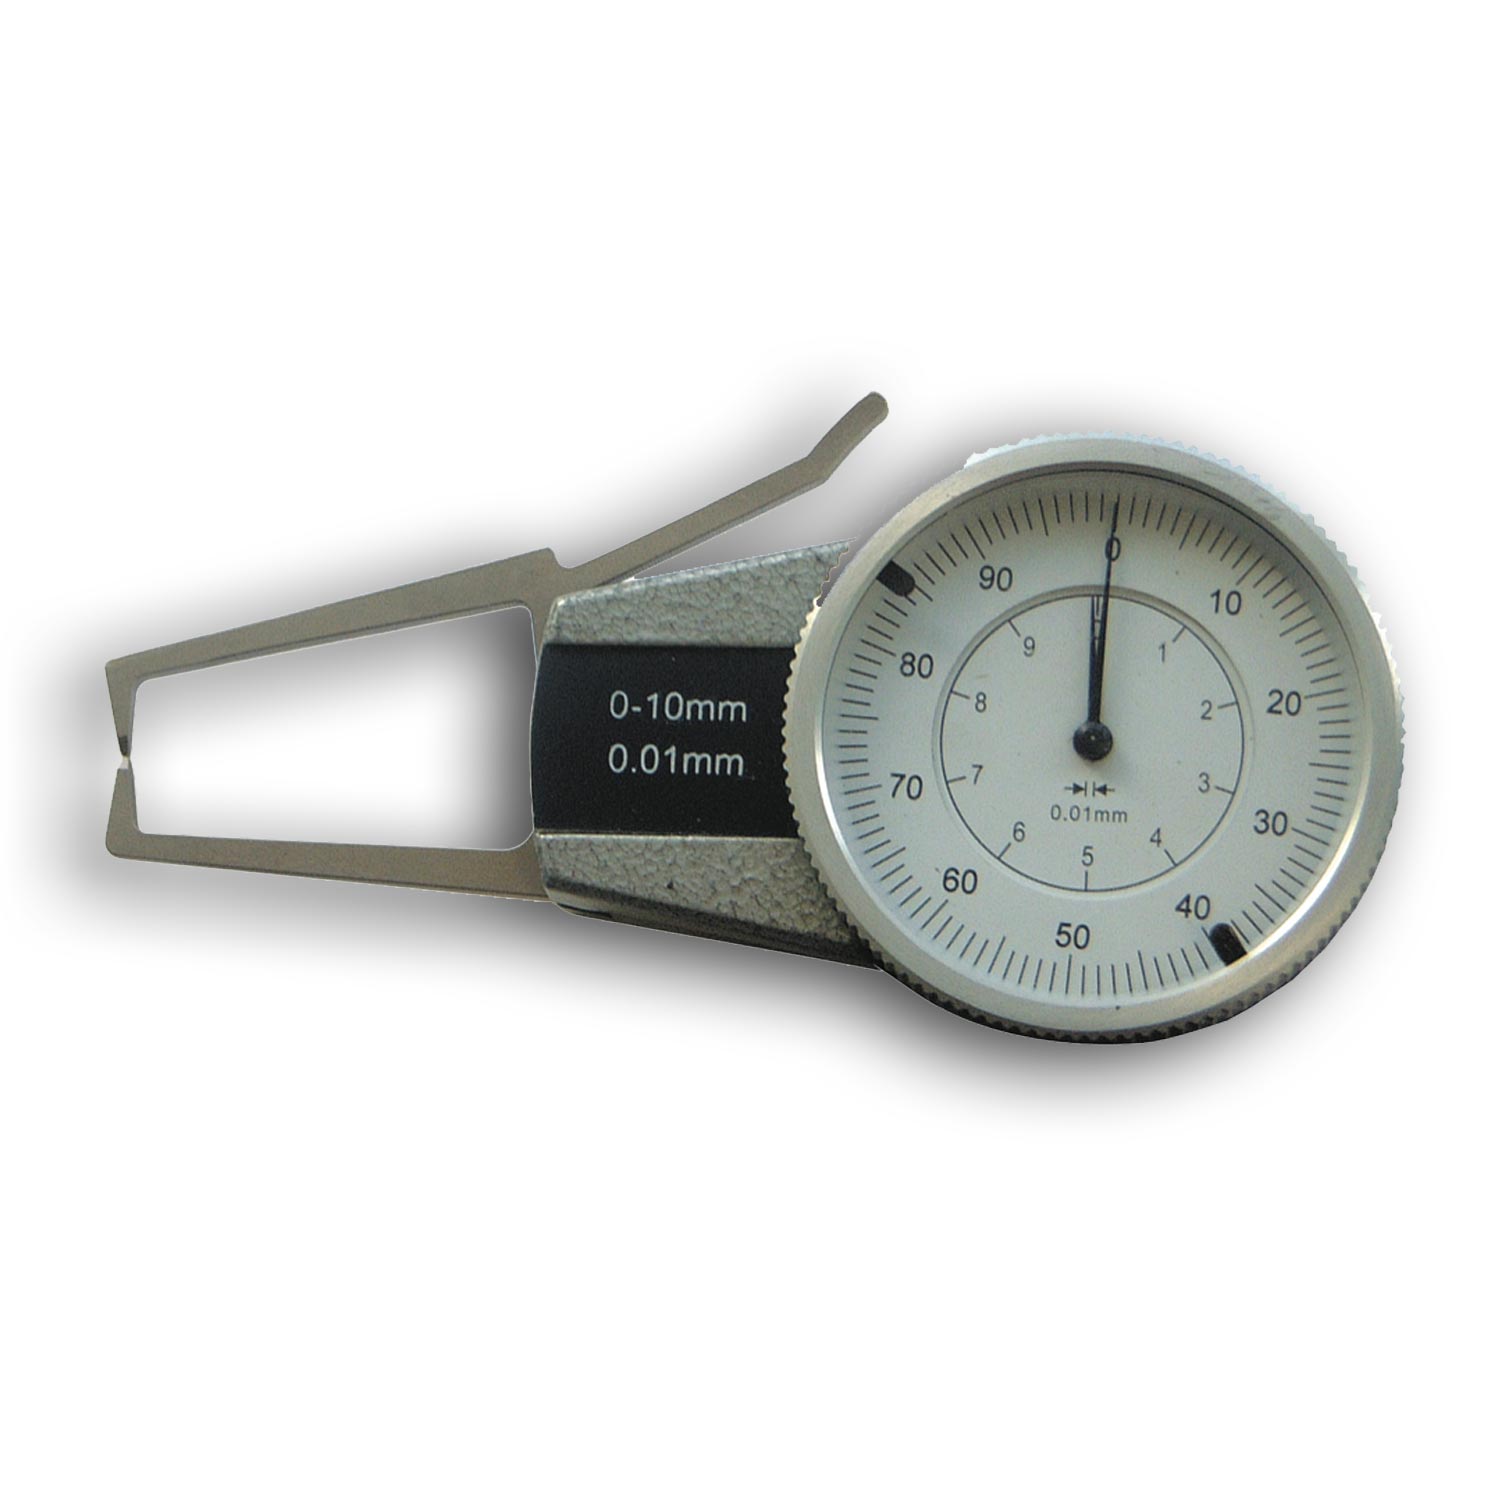 Durchmesser-Messgerät kann Entschließung Sunnran-Marke der